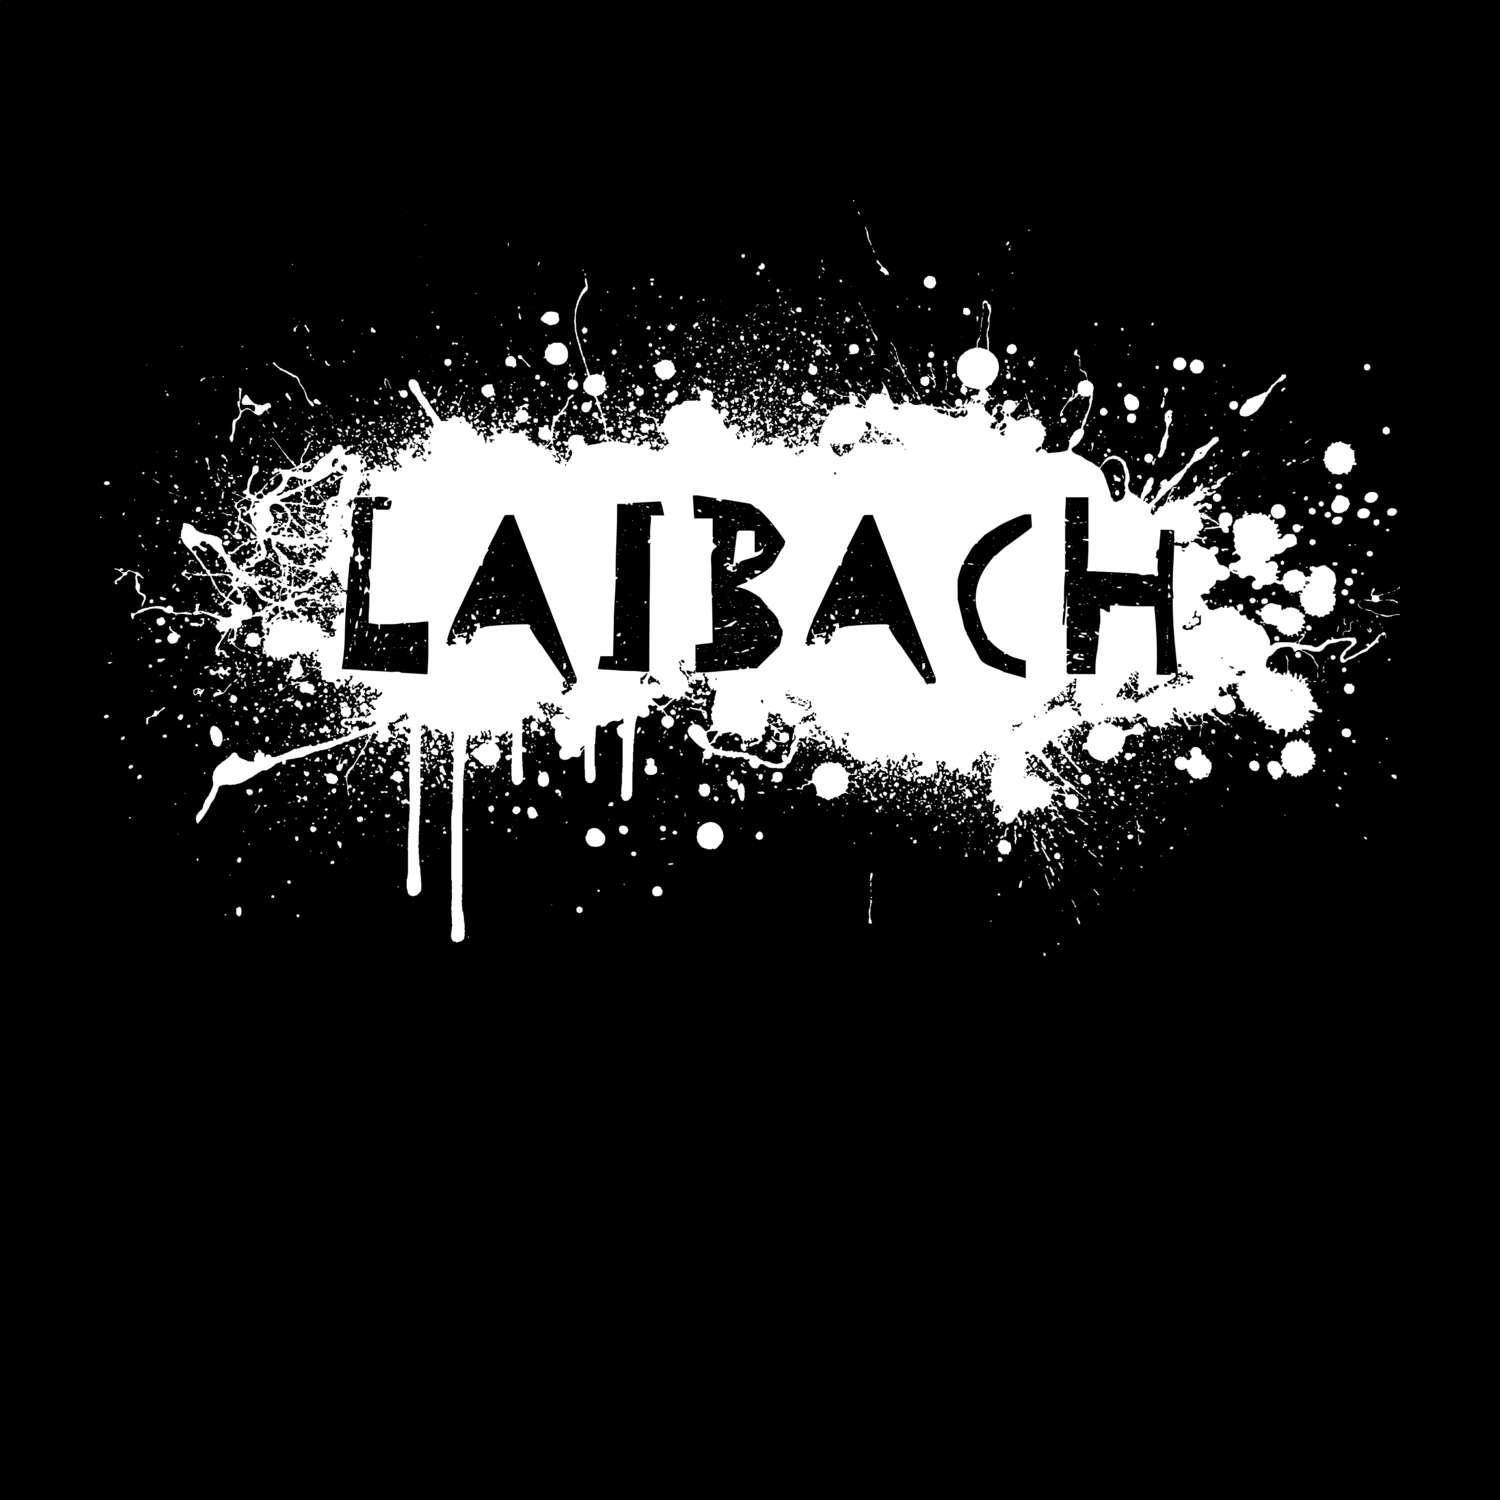 Laibach T-Shirt »Paint Splash Punk«